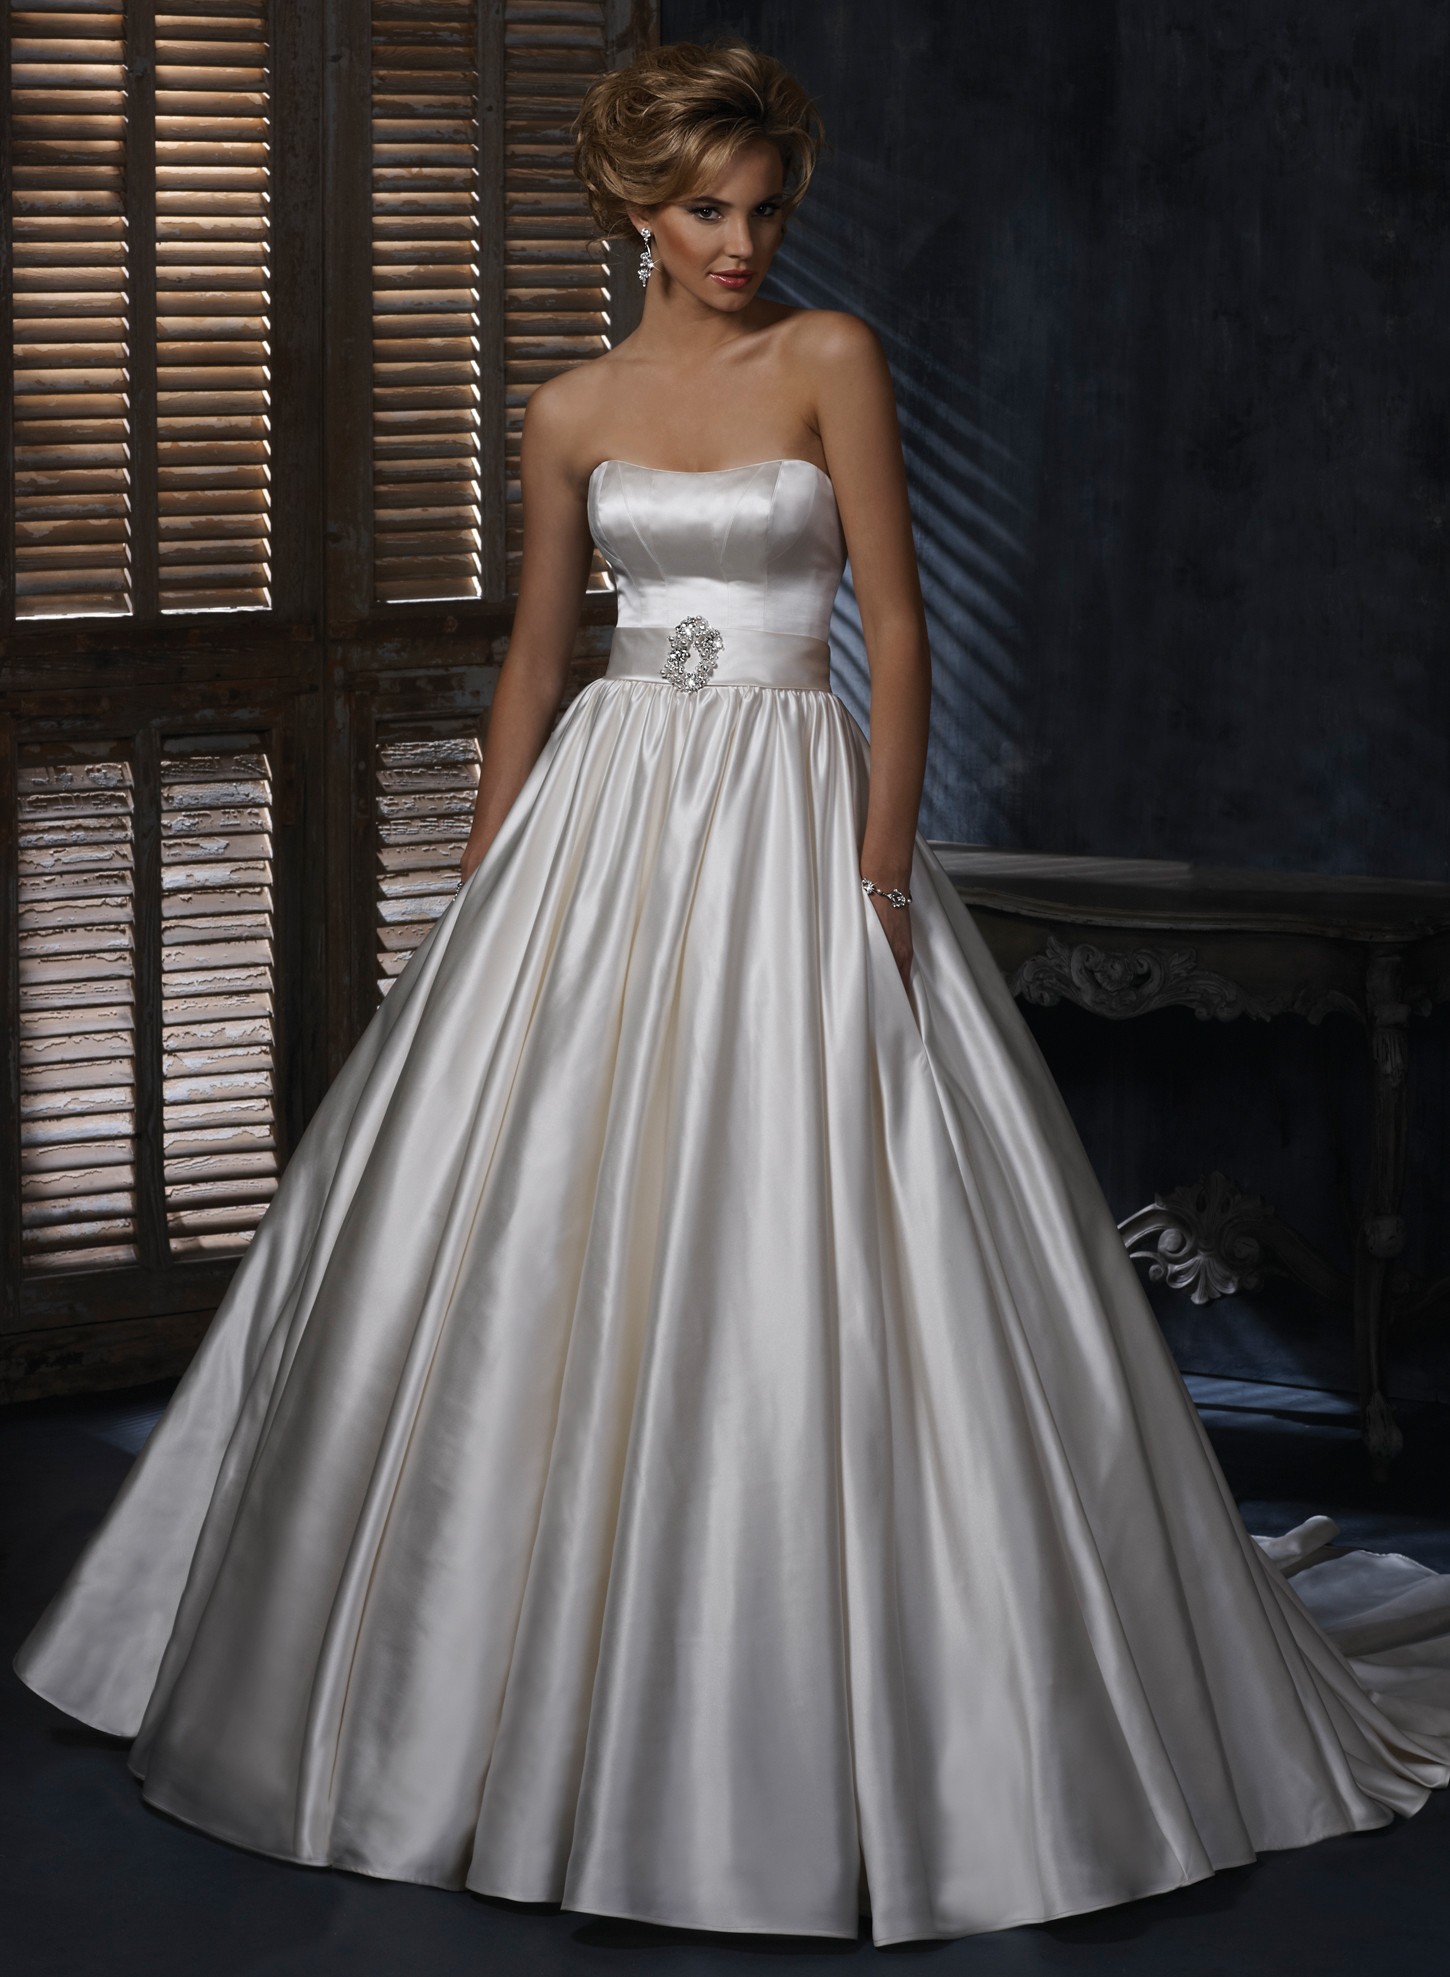 25 Ball Gown Wedding Dresses Ideas Wohh Wedding 3843